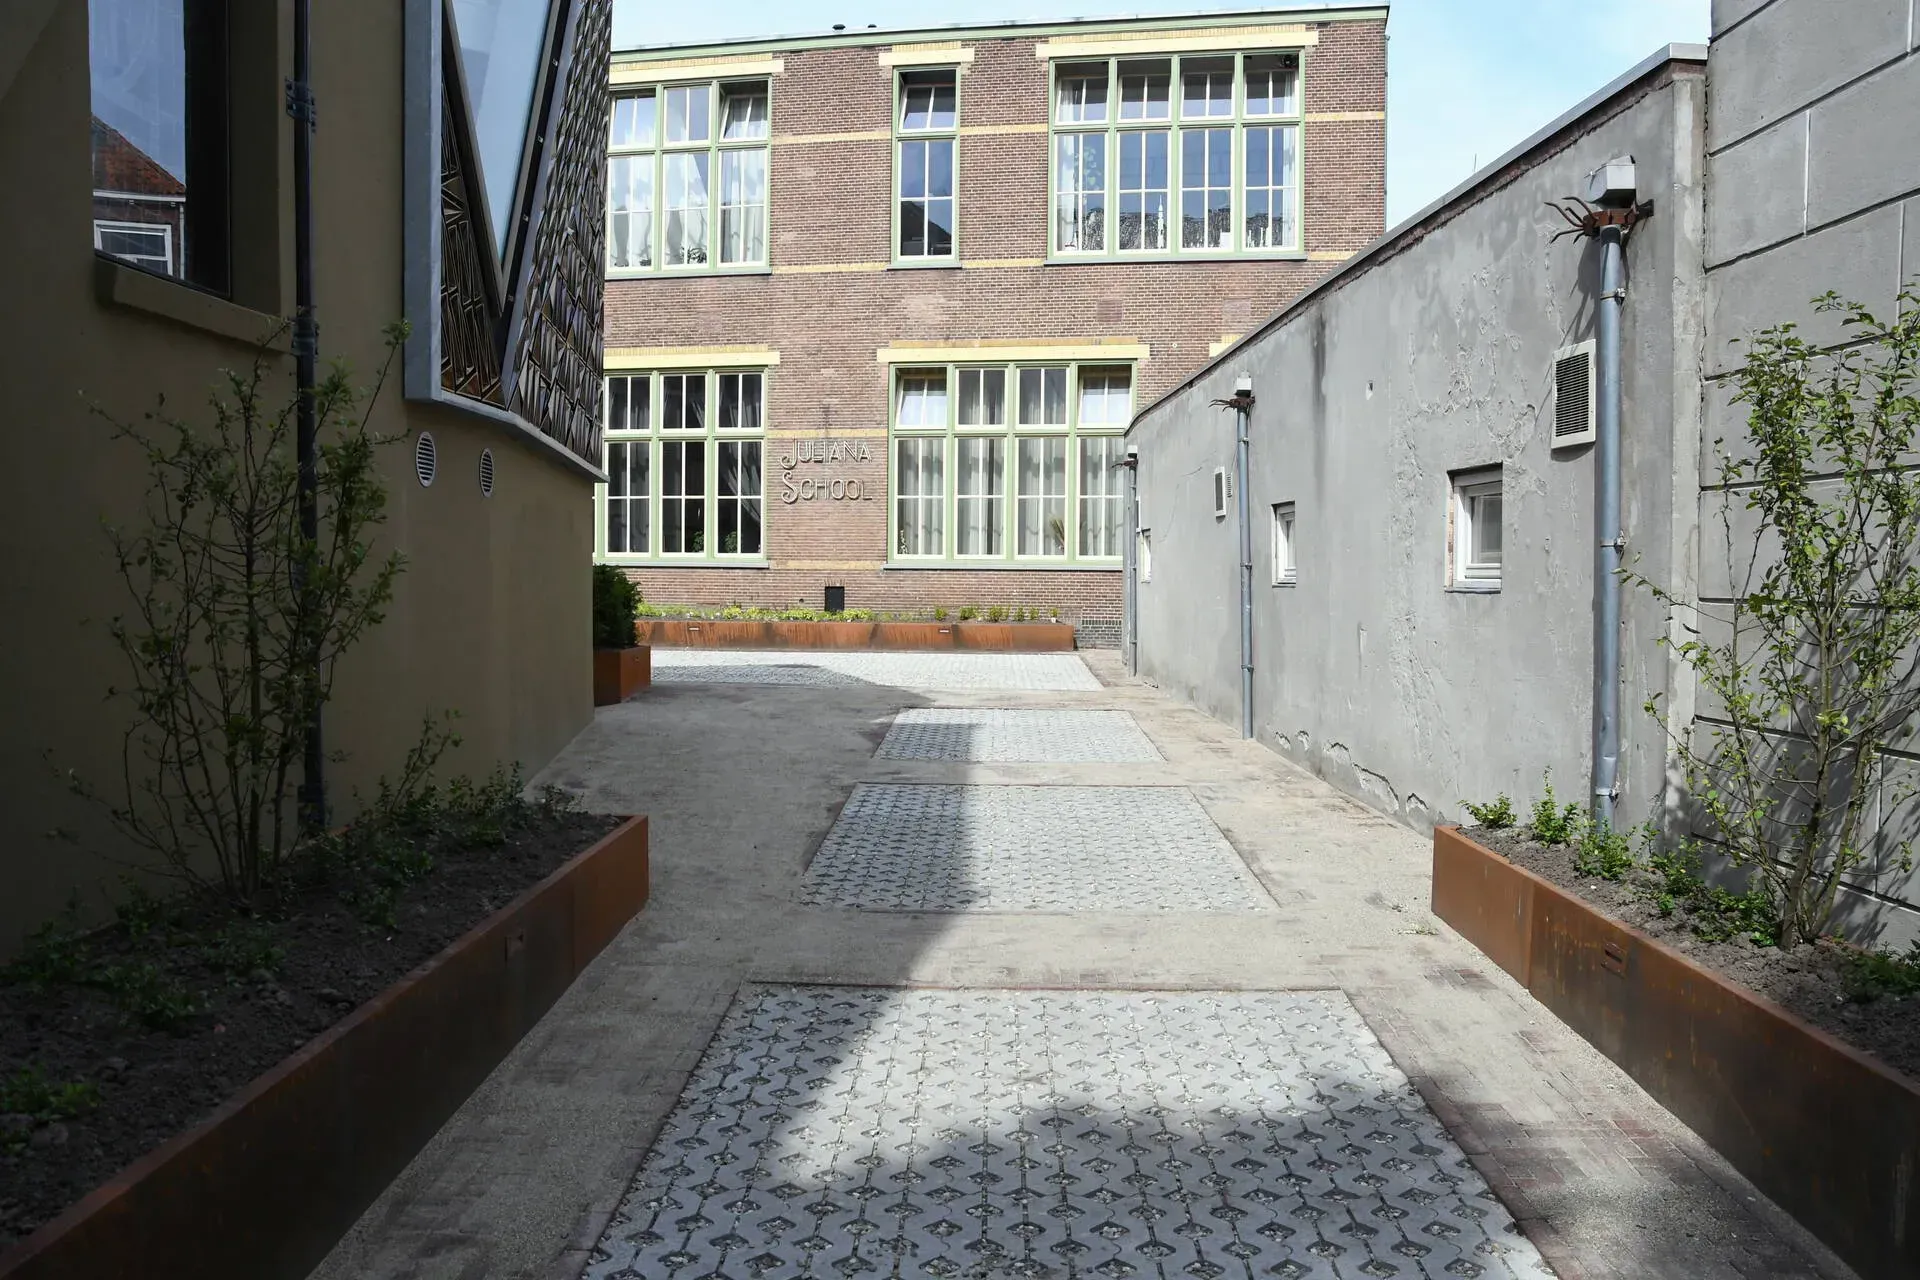 Renovatie van tuin pand De Utrecht in Leeuwarden